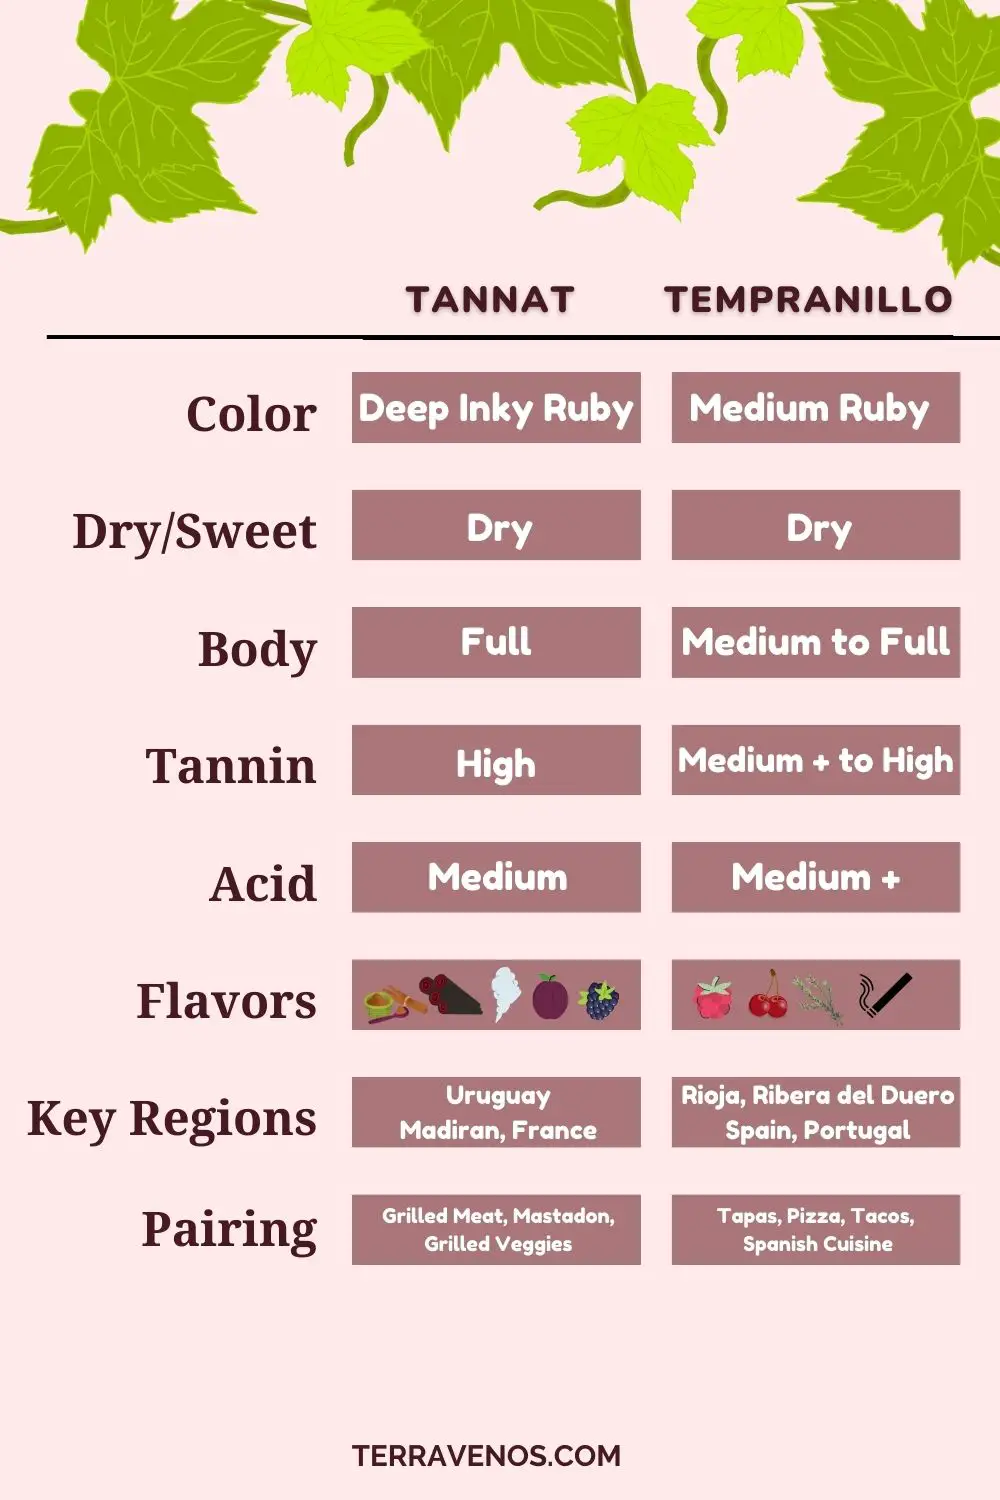 tannat-vs-tempranillo-wine-comparison-infographic